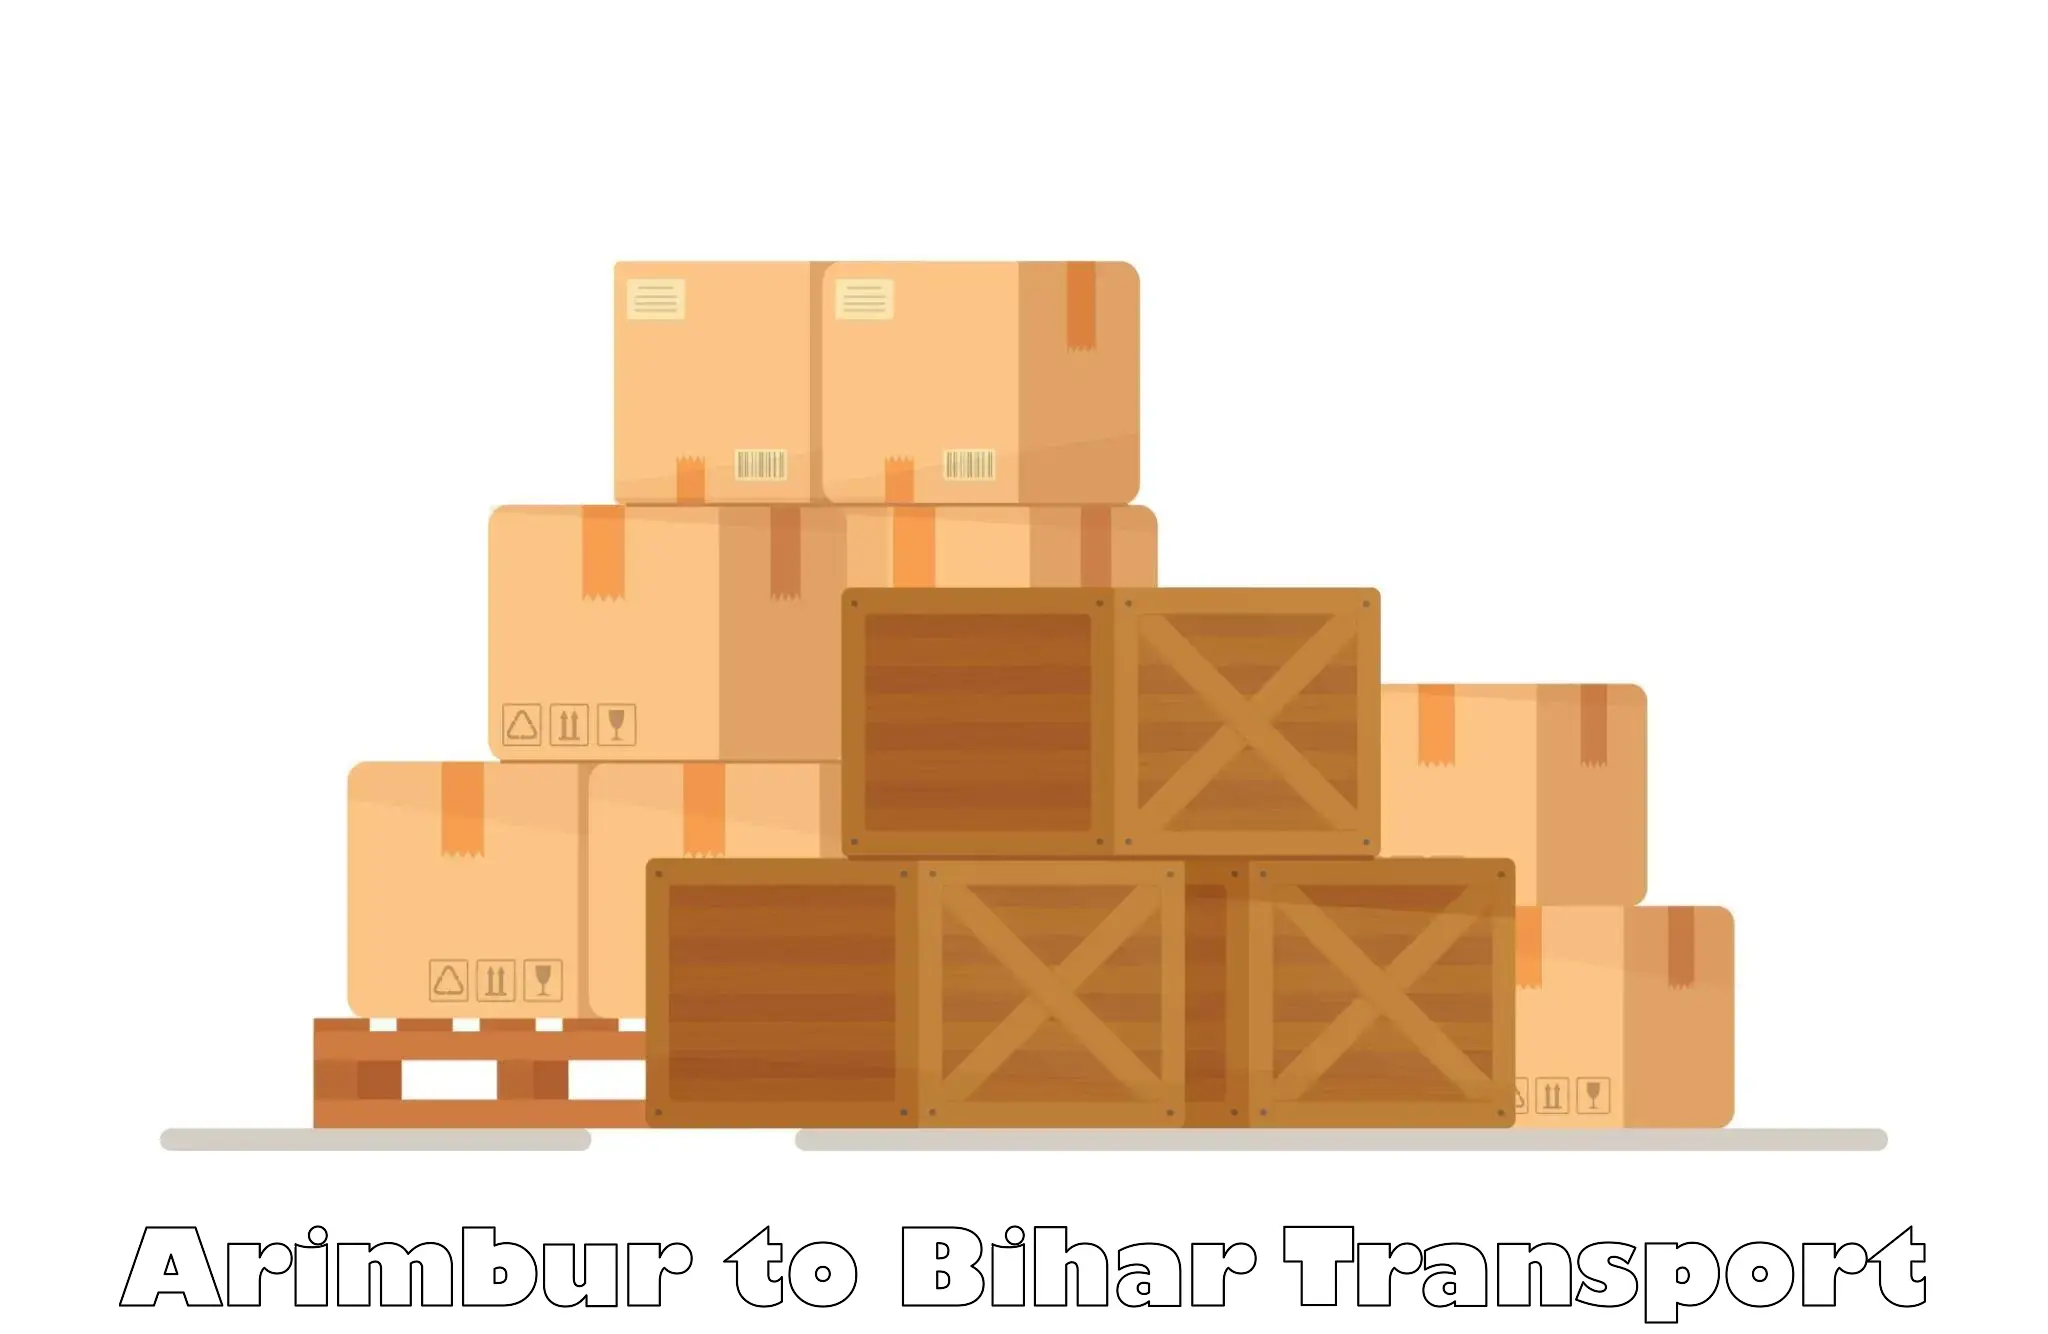 Lorry transport service Arimbur to Bihar